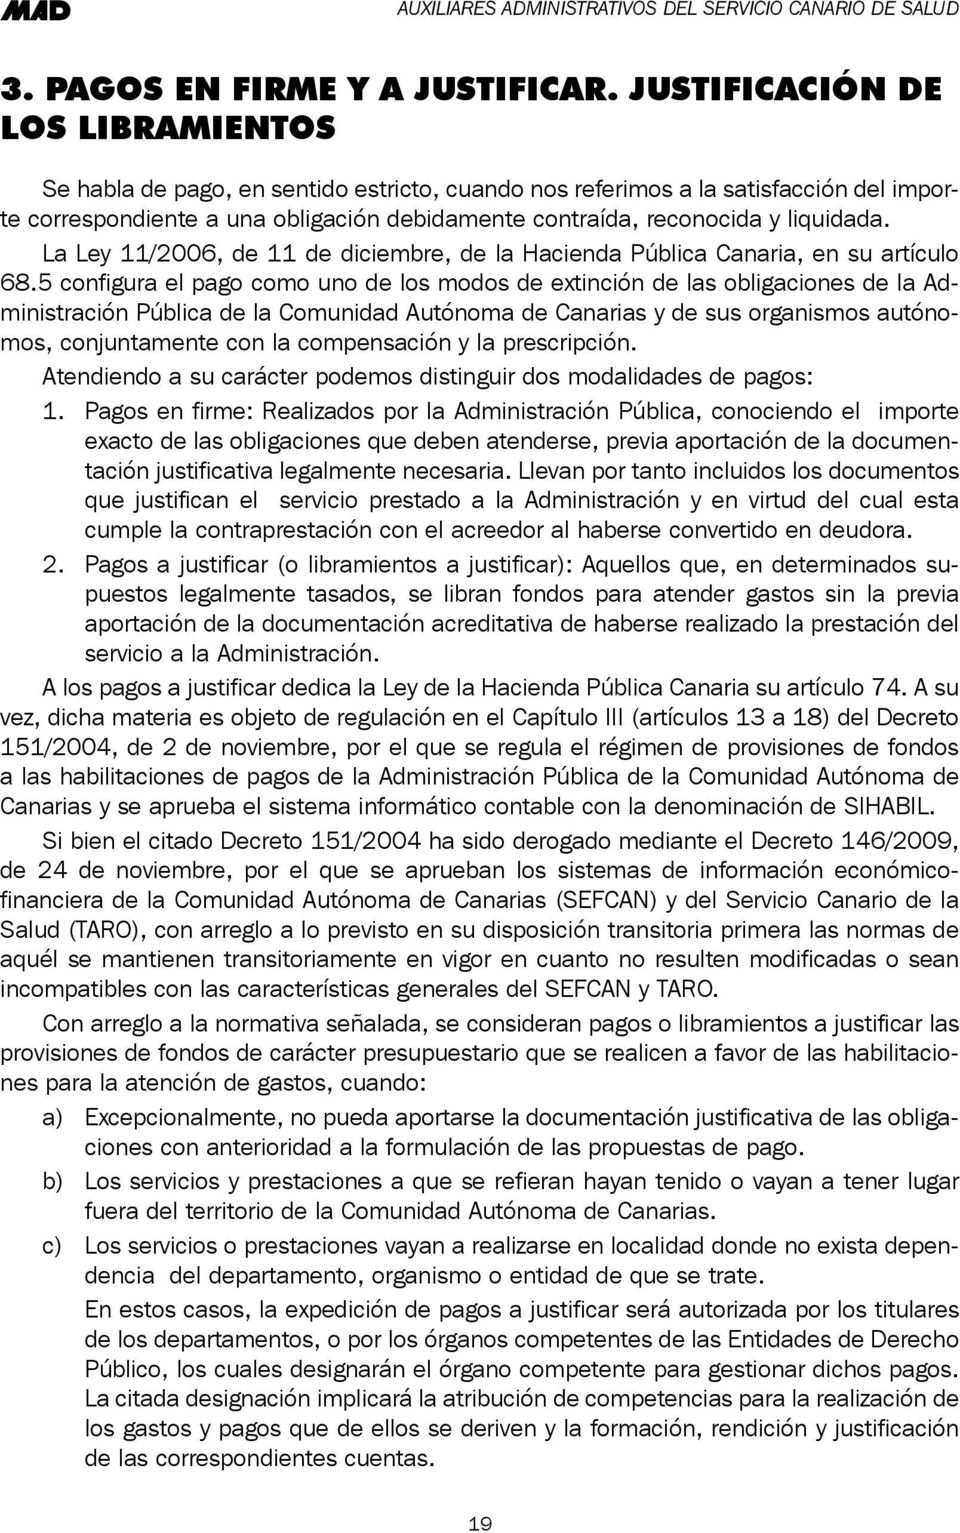 liquidada. La Ley 11/2006, de 11 de diciembre, de la Hacienda Pública Canaria, en su artículo 68.